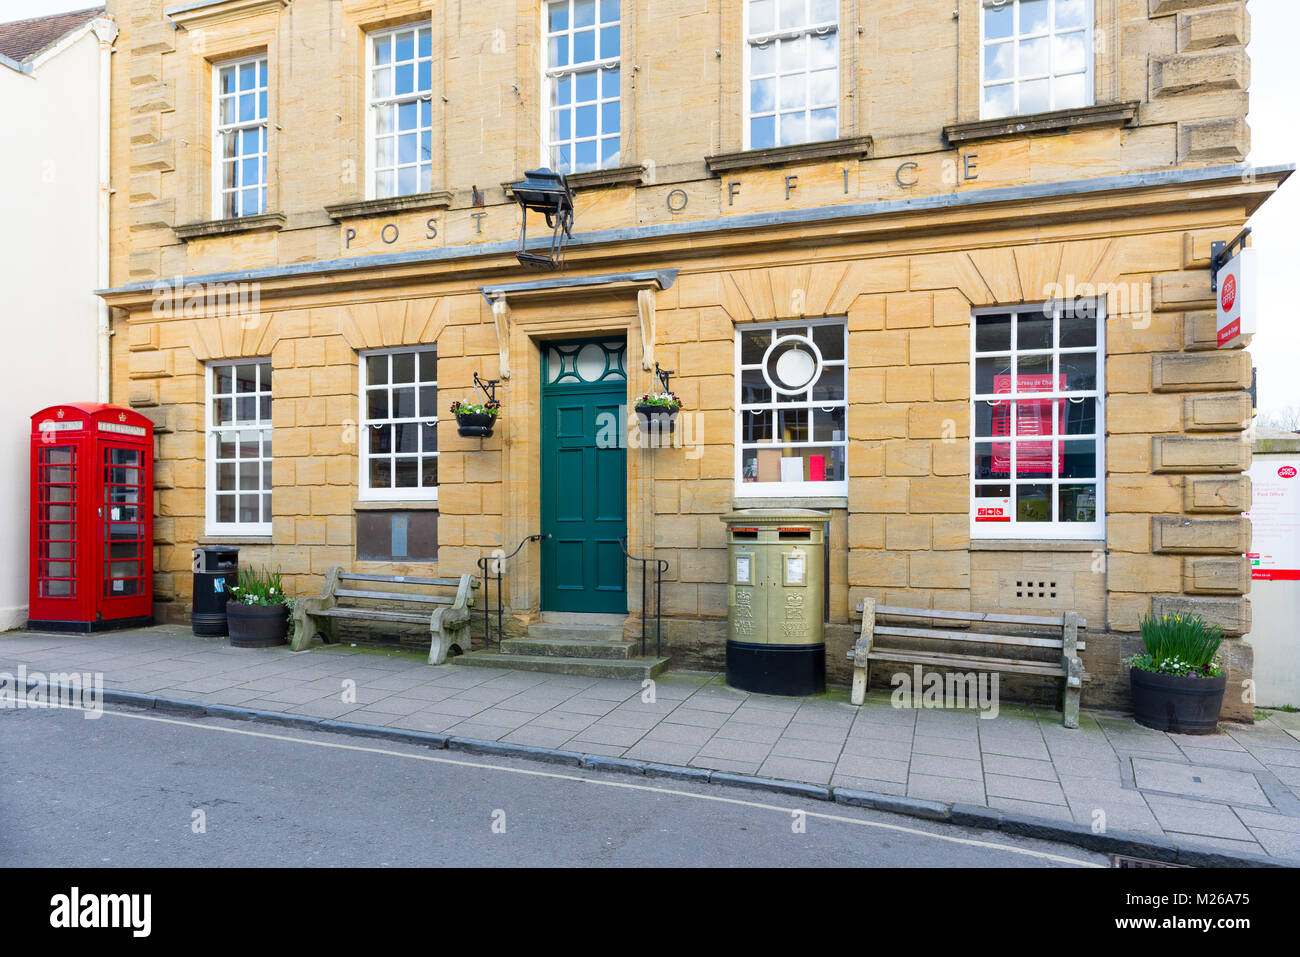 High Street, bureau de poste, Sherborne Dorset, UK, avec une cabine téléphonique rouge et or une lettre fort peint pour 2012 l'Olympienne tir Peter Wilson. Banque D'Images